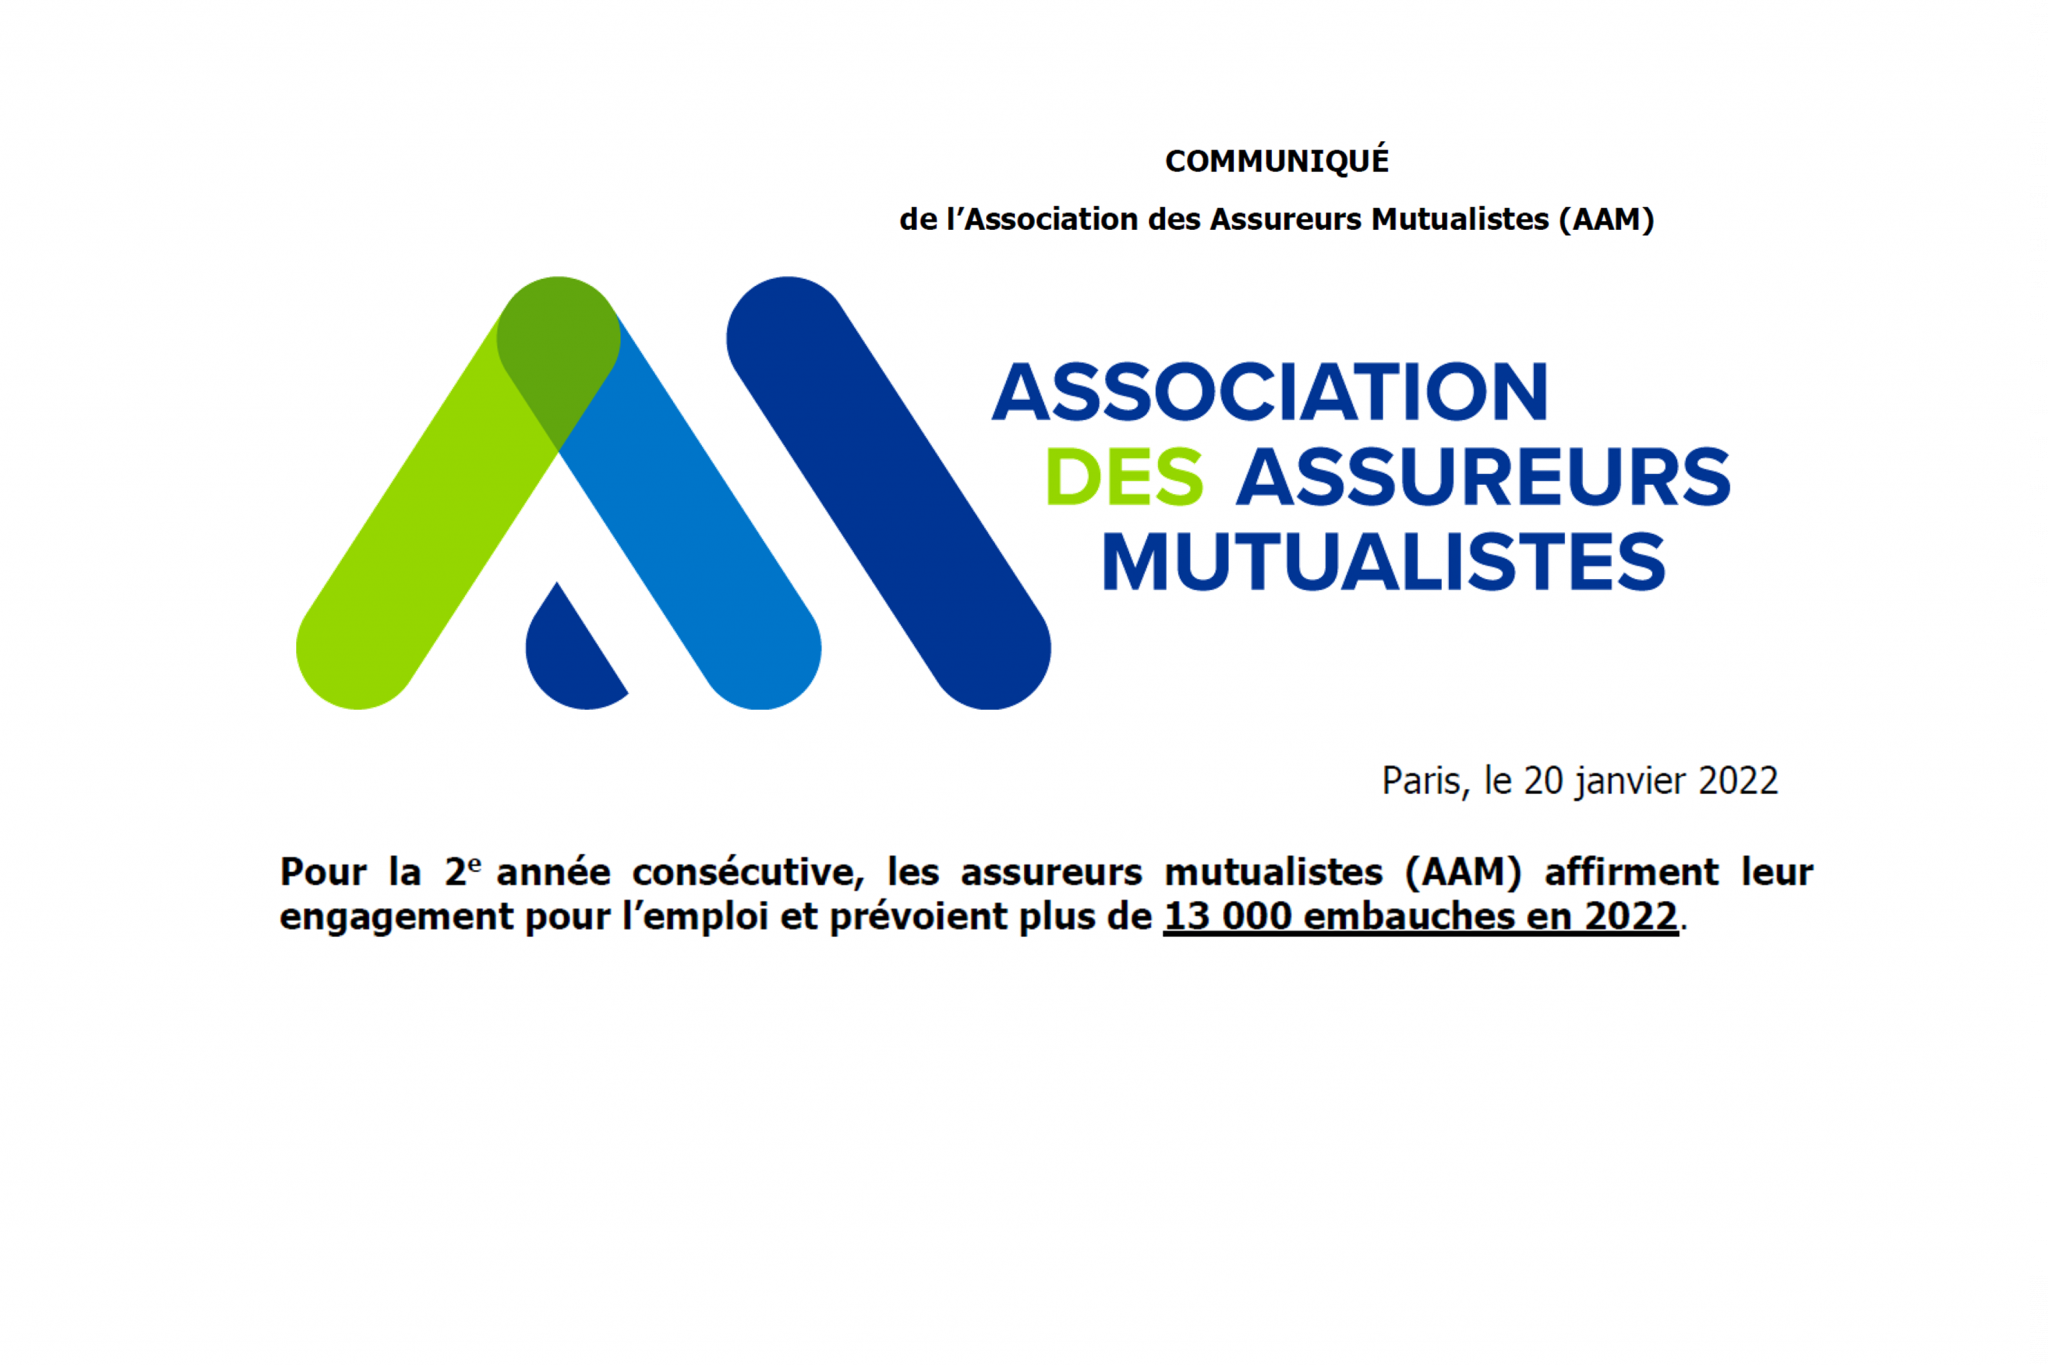 Les Assureurs Mutualistes (AAM) prévoient plus de 13 000 embauches en 2022